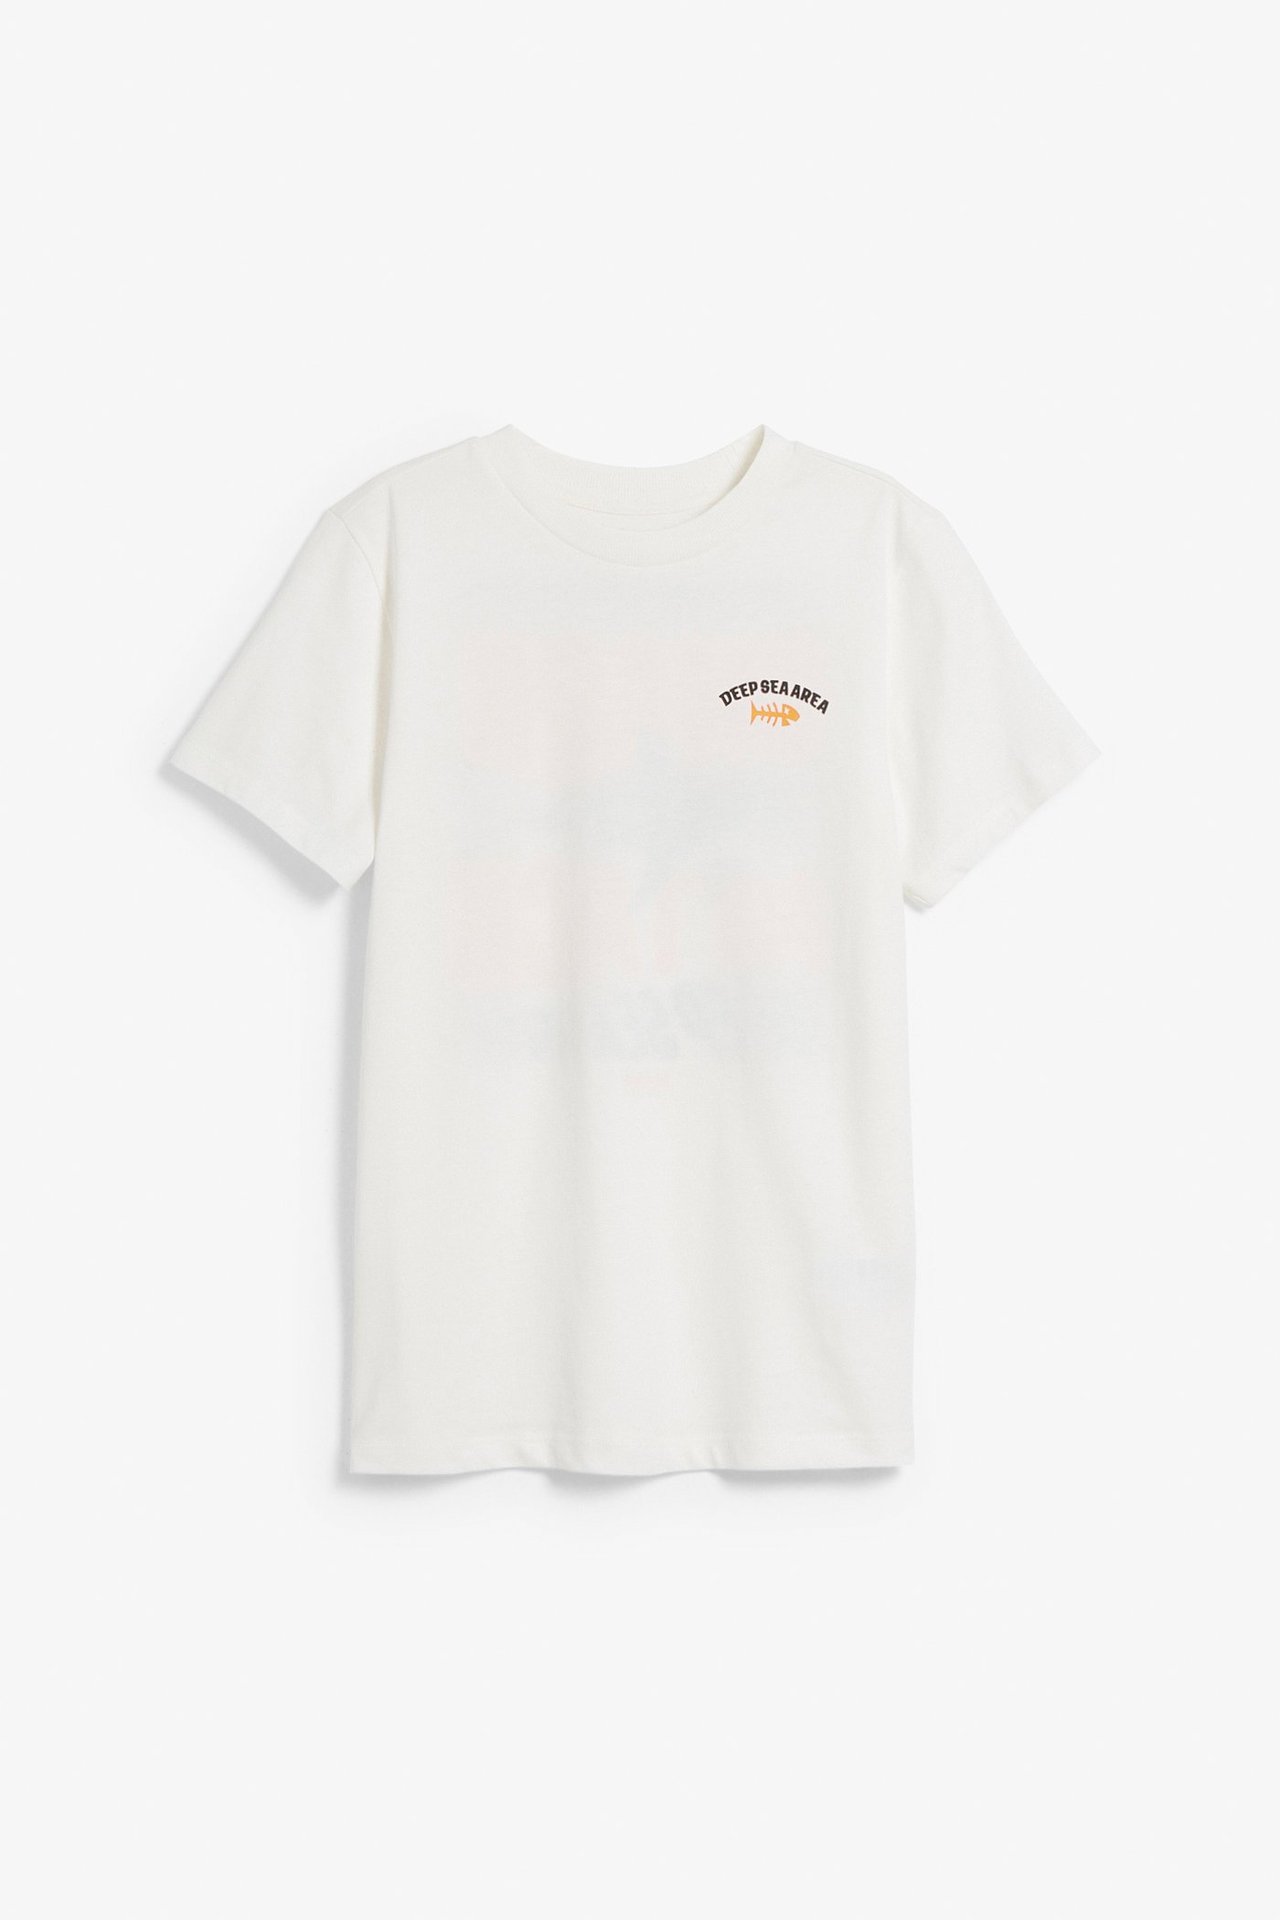 Lyhythihainen t-paita, jossa on painatus Luonnonvalkoinen - 134/140 - 1